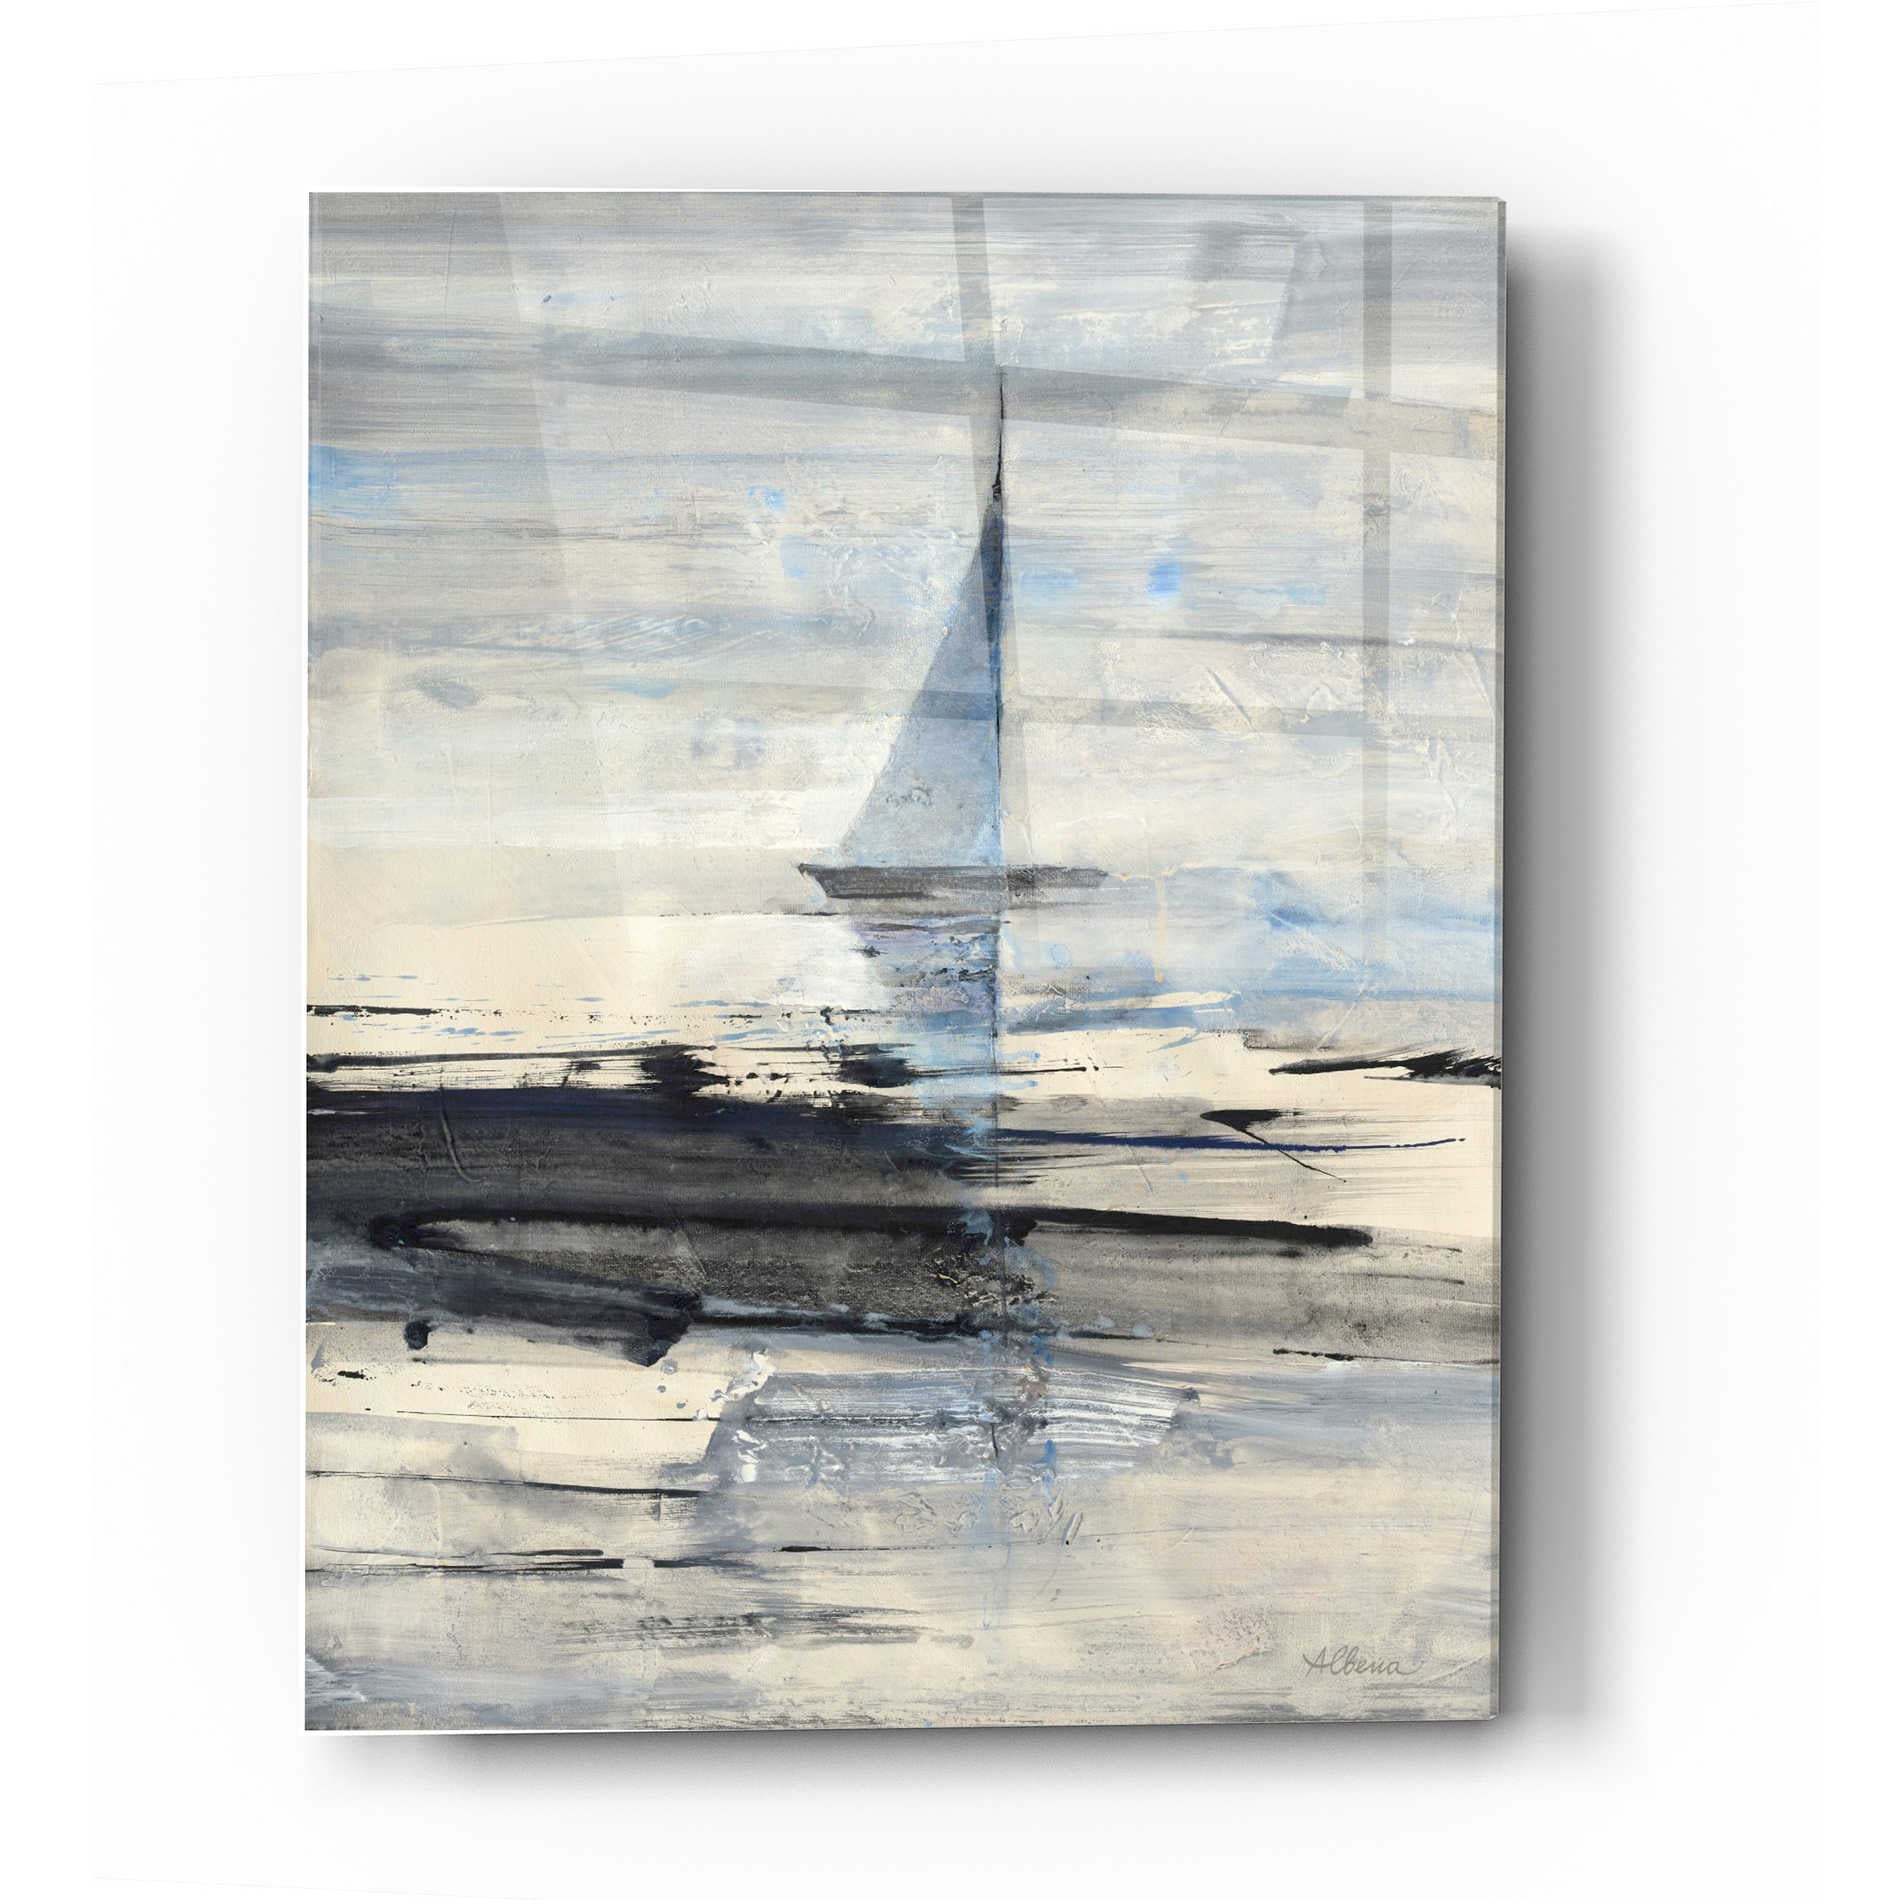 Epic Art 'Sailing' by Albena Hristova, Acrylic Glass Wall Art,12x16